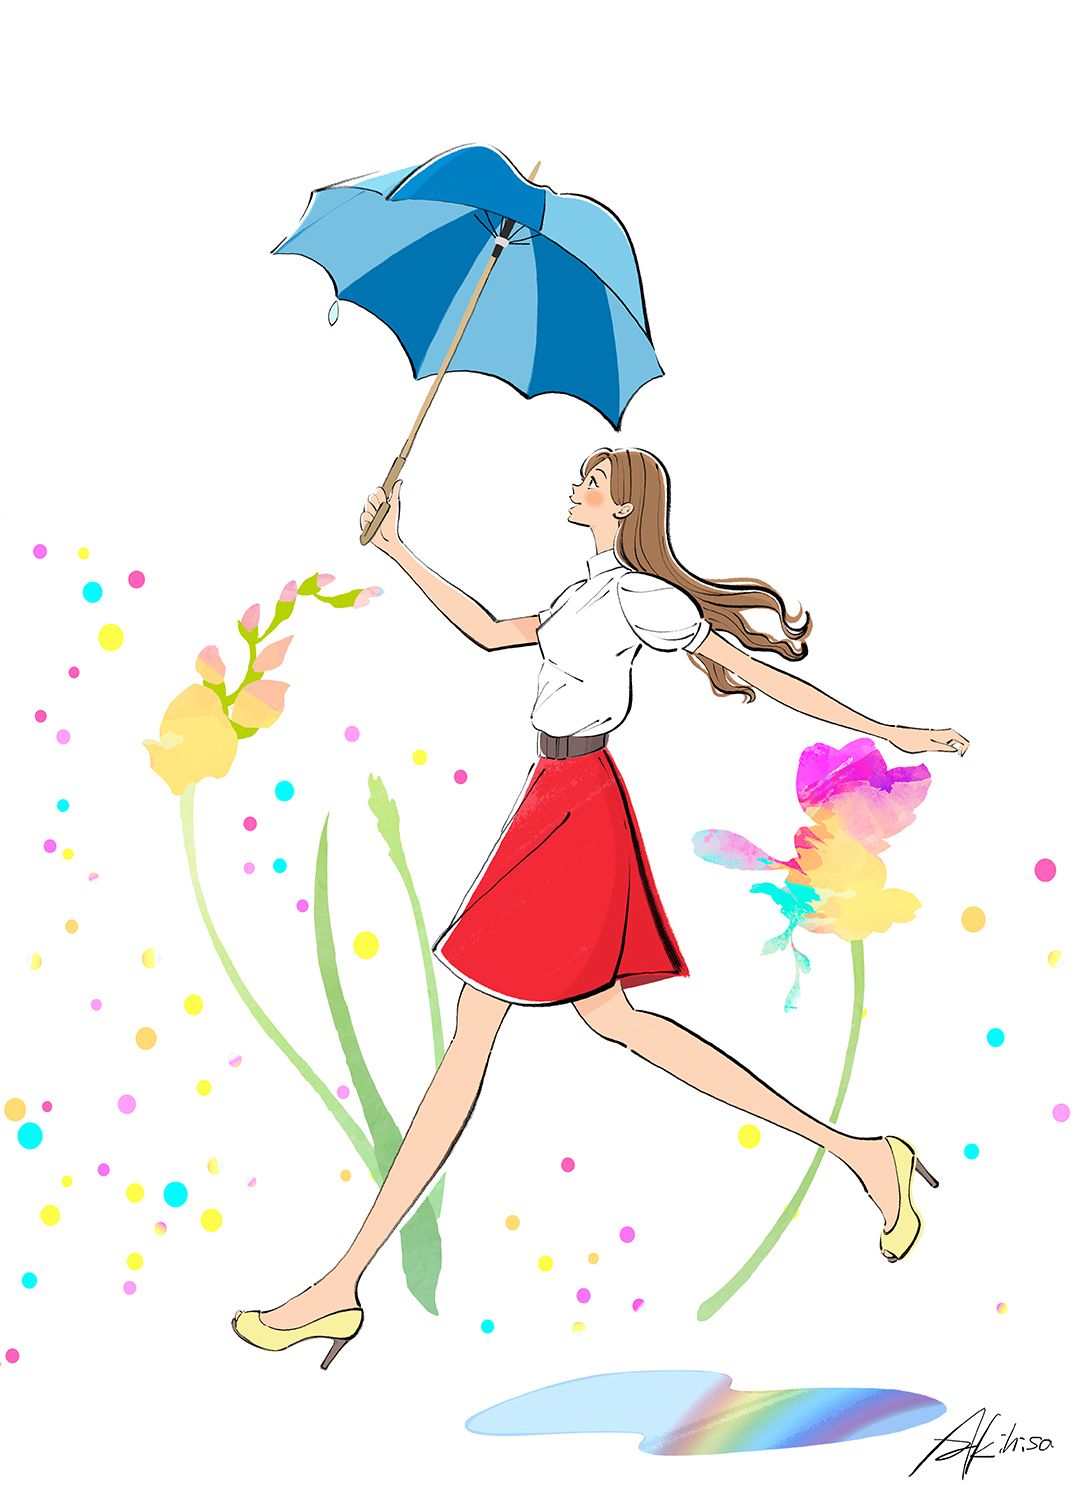 傘を持つ女性のイラスト。雨上がり、明るい未来へ向かって